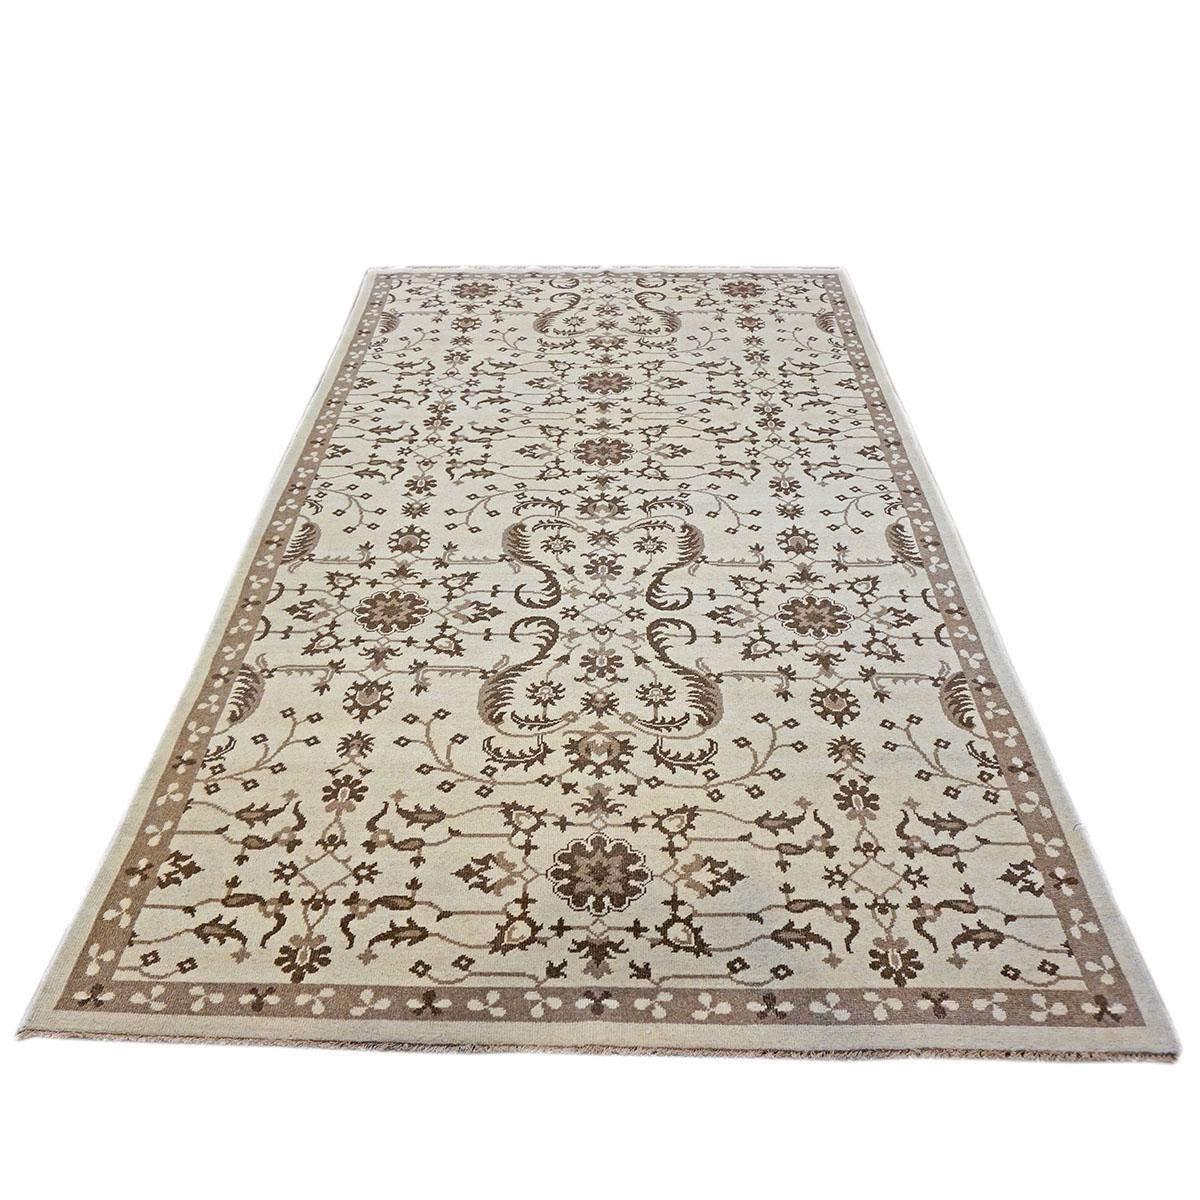 Ashly Fine Rugs présente une reproduction ancienne d'un tapis persan Sultanabad 6x10 ivoire et brun fait à la main. Faisant partie de notre propre production antérieure, cette reconstitution antique a été pensée et créée en interne et 100% faite à